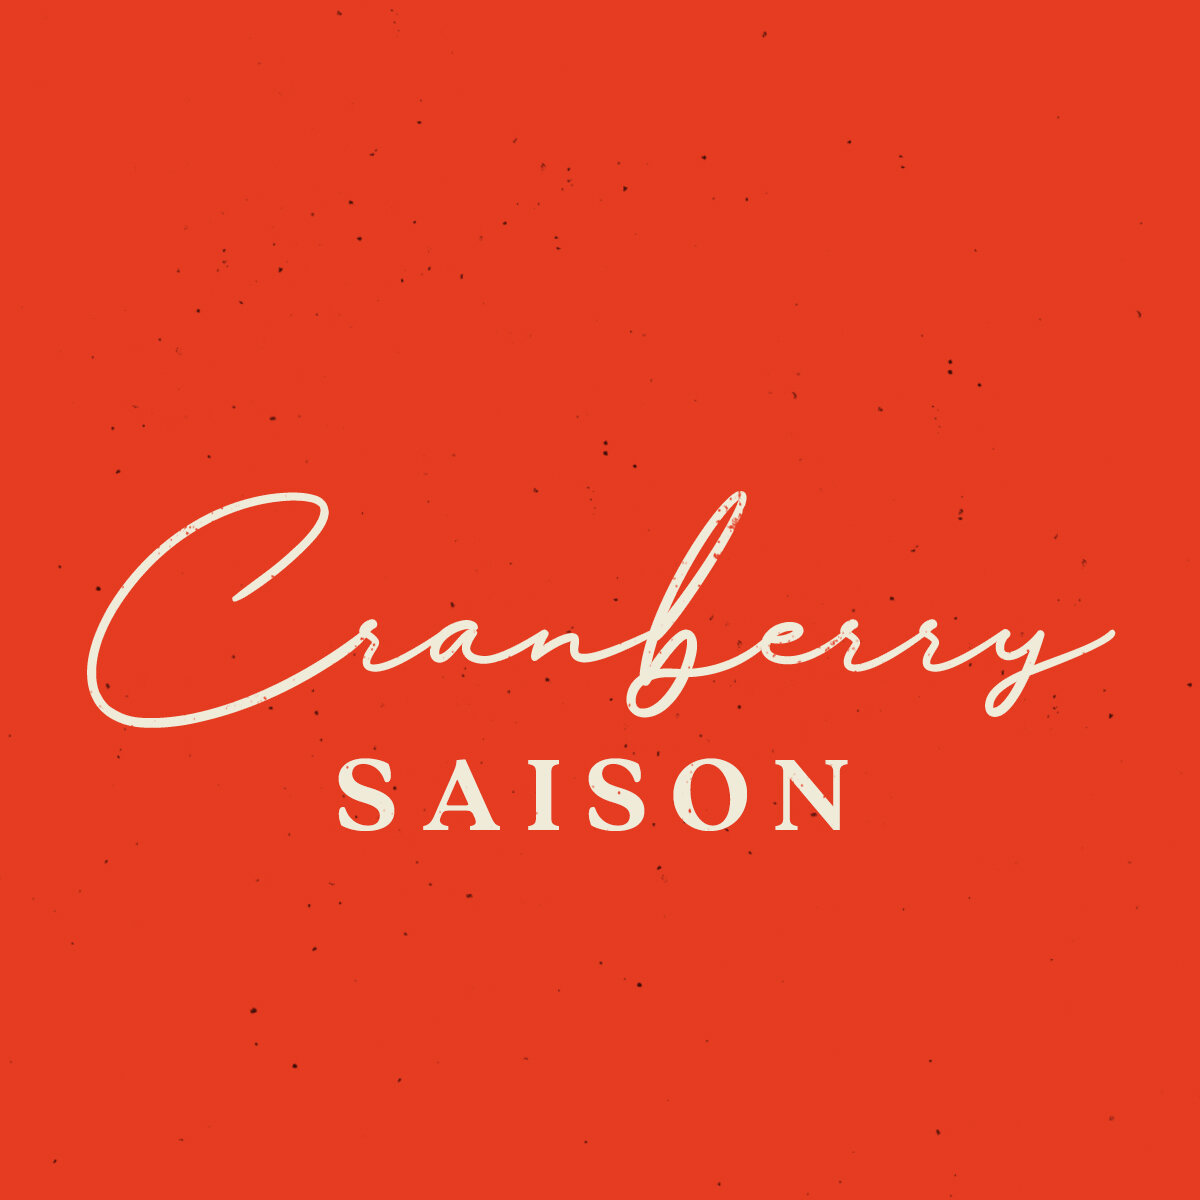 Cranberry Saison